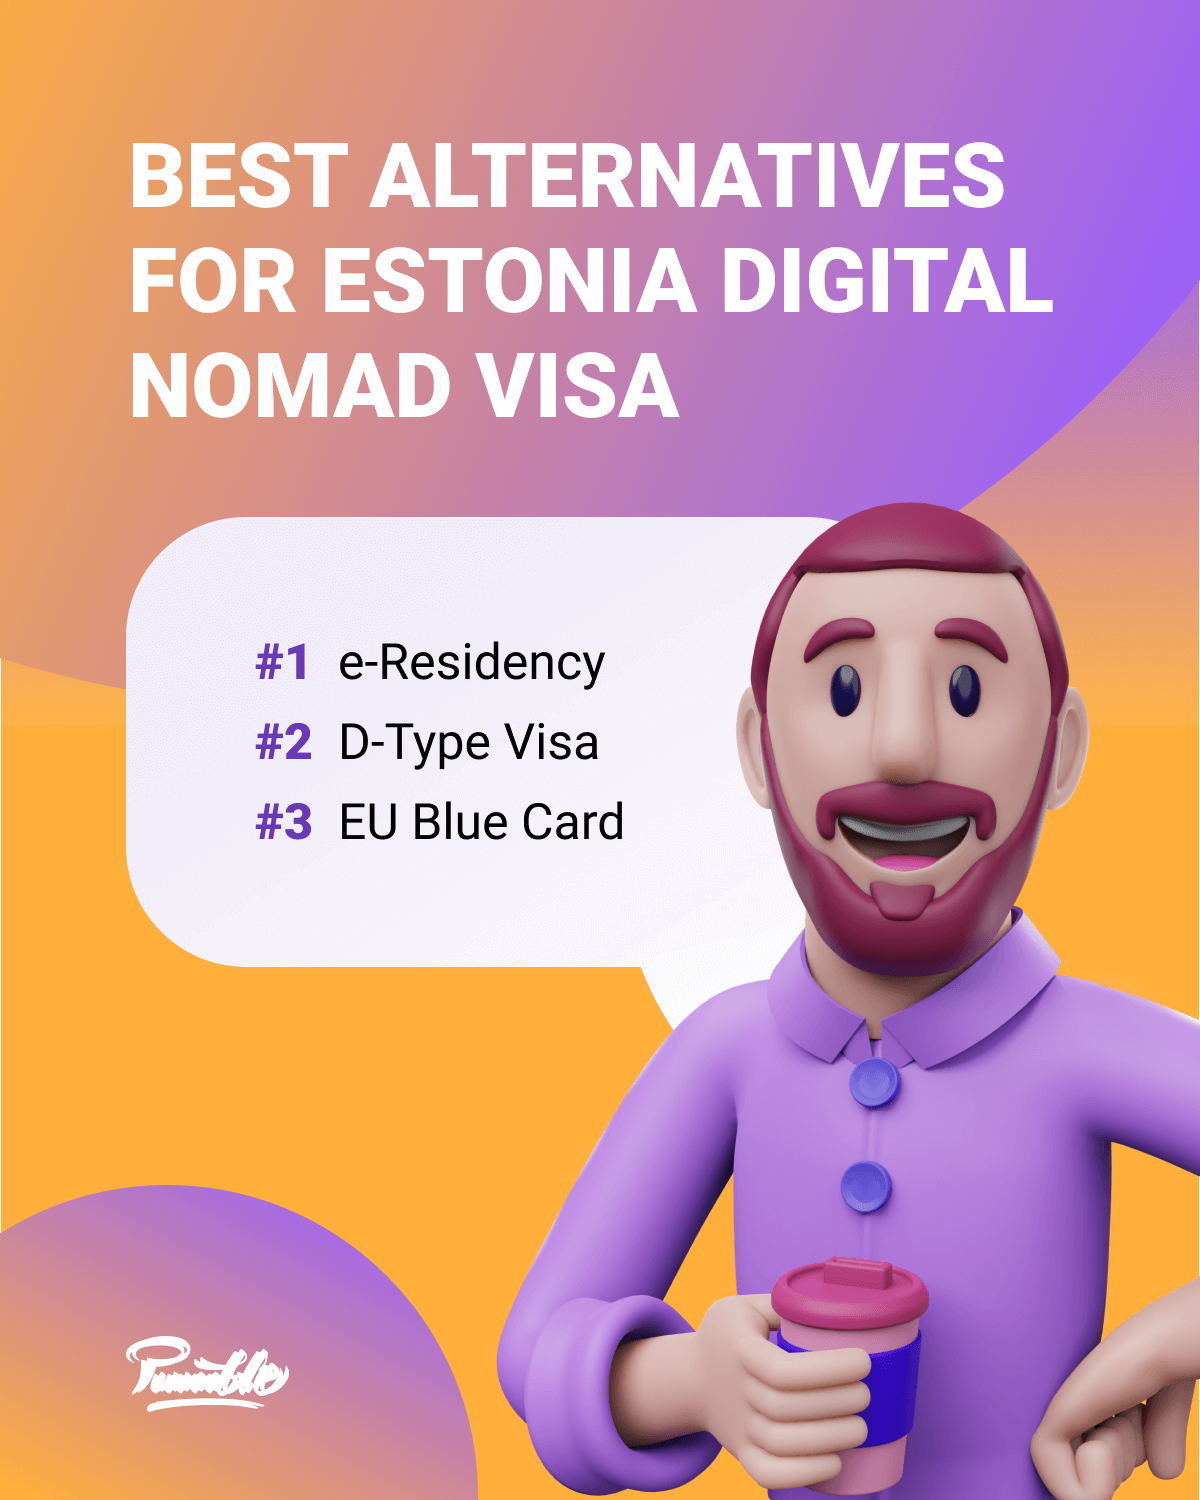 Best alternatives for Estonia digital nomad visa